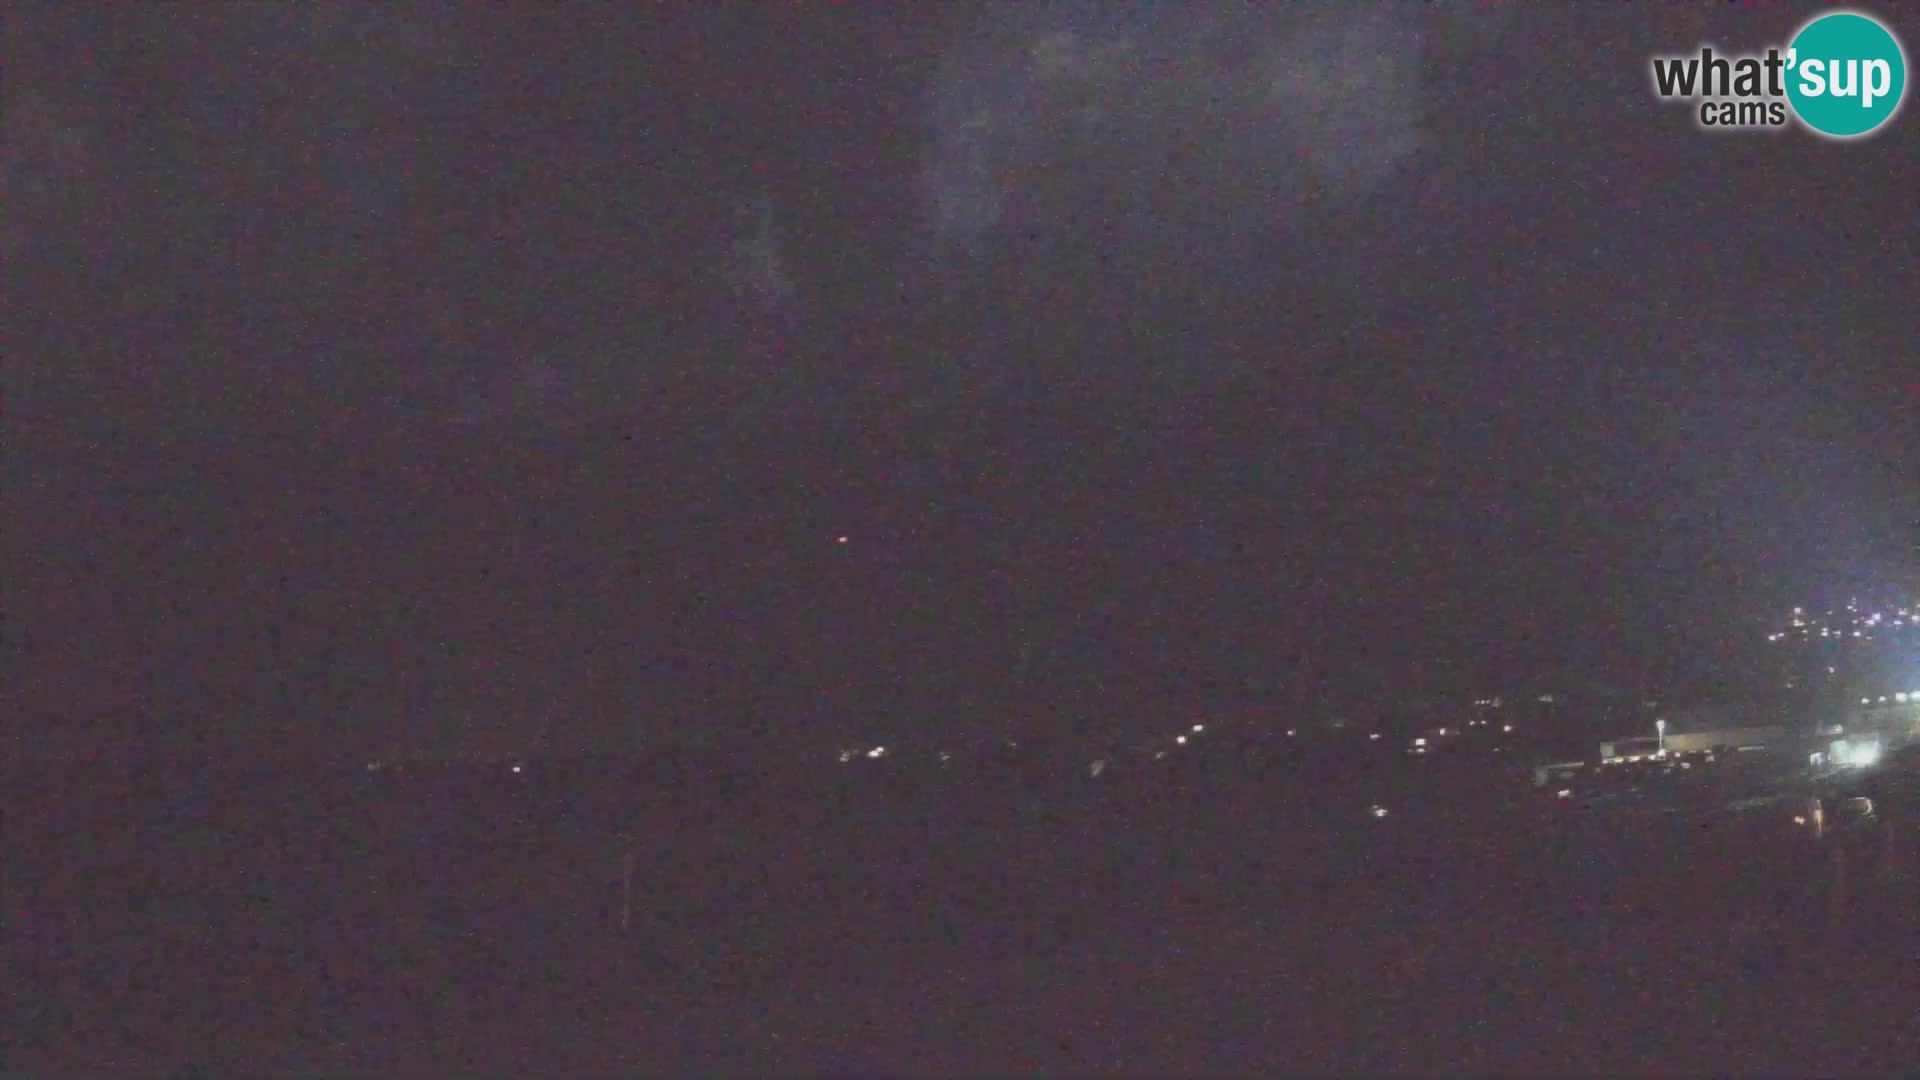 Spletna kamera letališče Bovec – pogled proti Kaninu